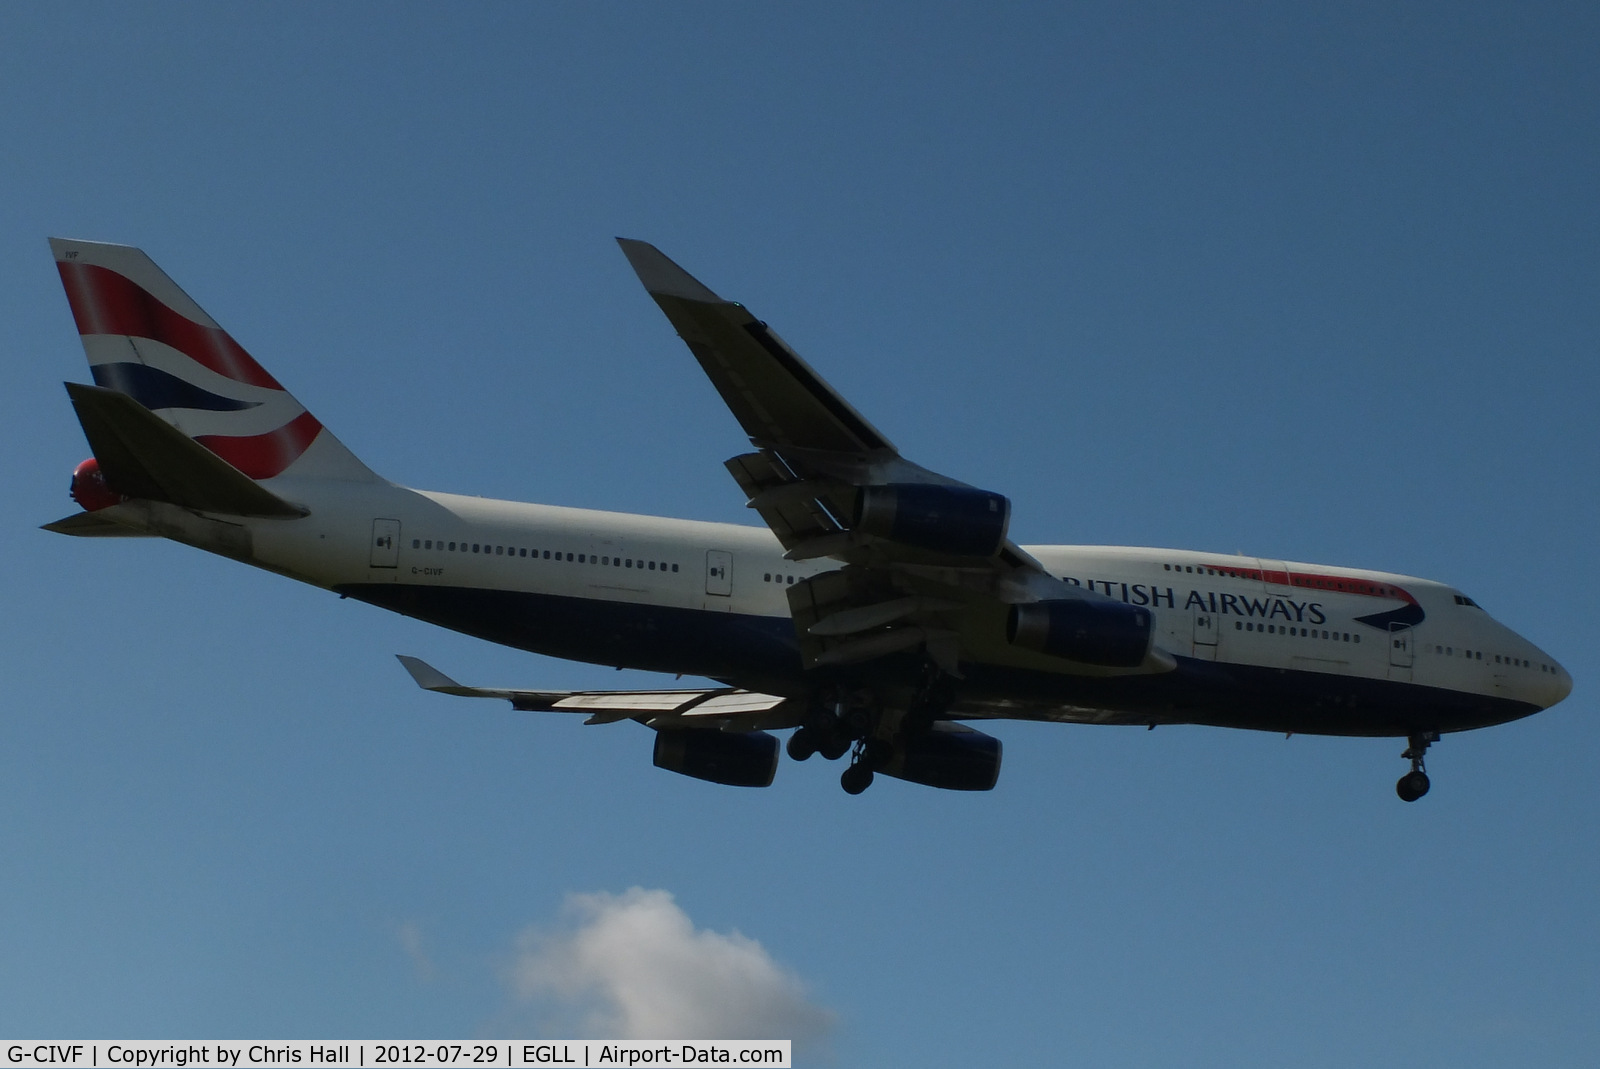 G-CIVF, 1995 Boeing 747-436 C/N 25434, British Airways